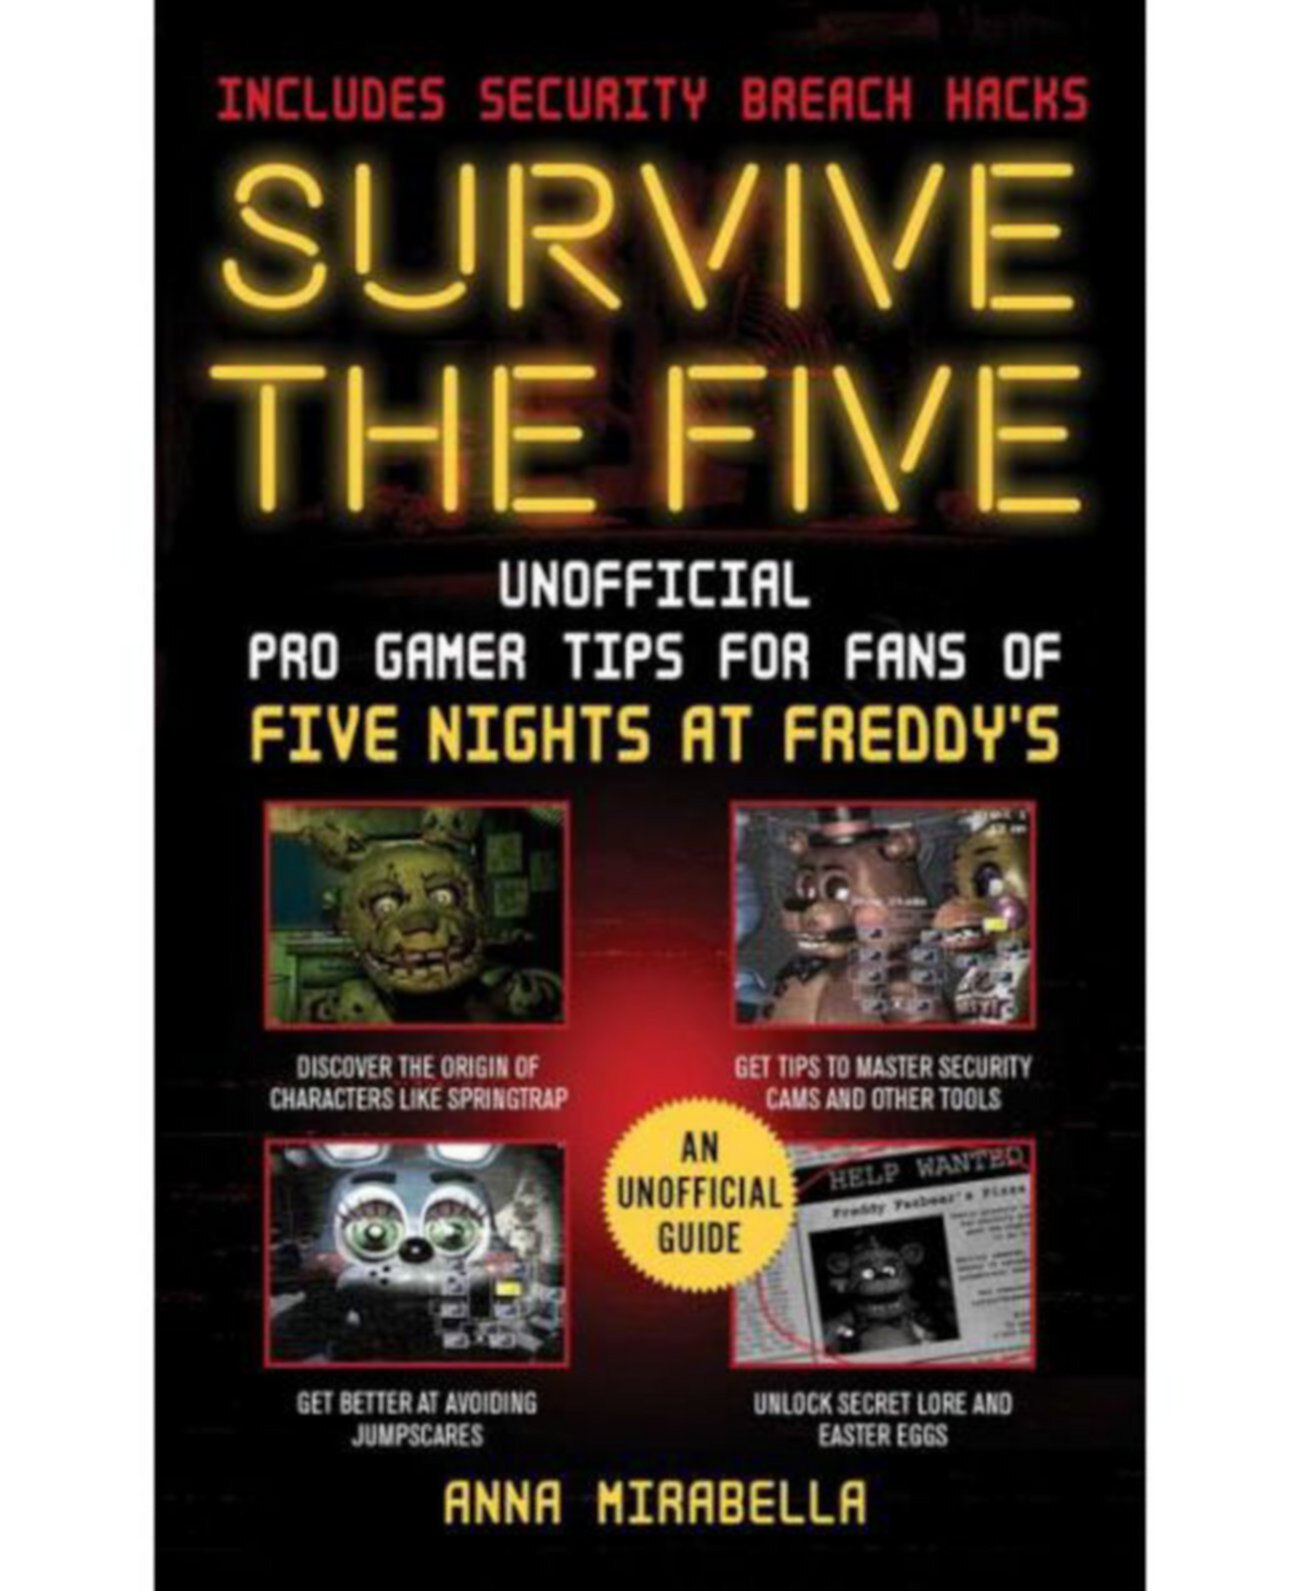 Survive the Five — неофициальные советы профессиональных геймеров для поклонников Five Nights at Freddy's — включая хаки по взлому безопасности от Анны Мирабеллы Barnes & Noble